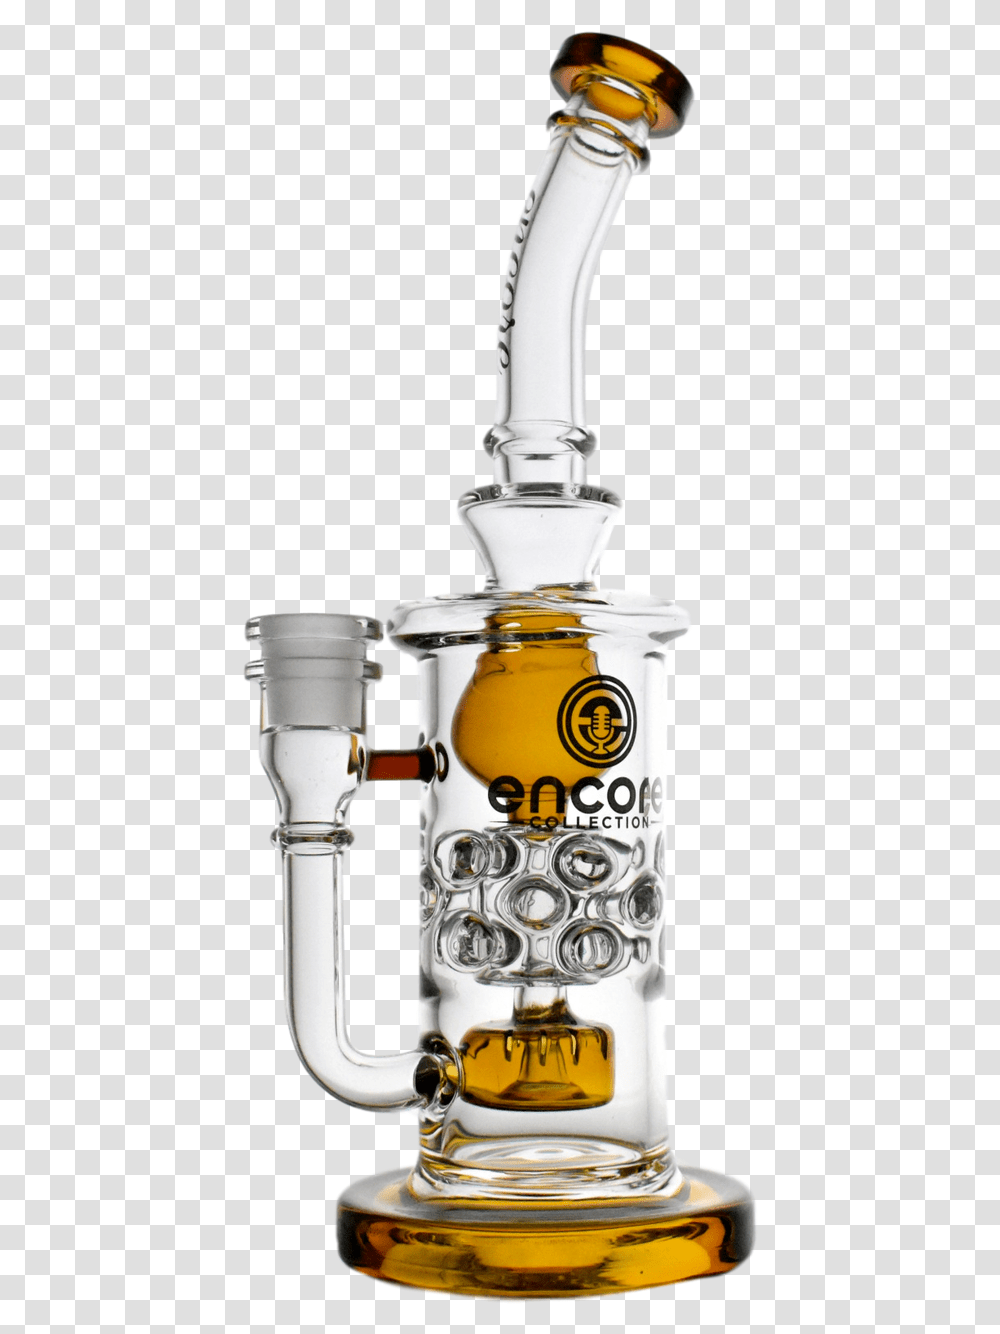 Robot, Stein, Jug, Glass, Bottle Transparent Png